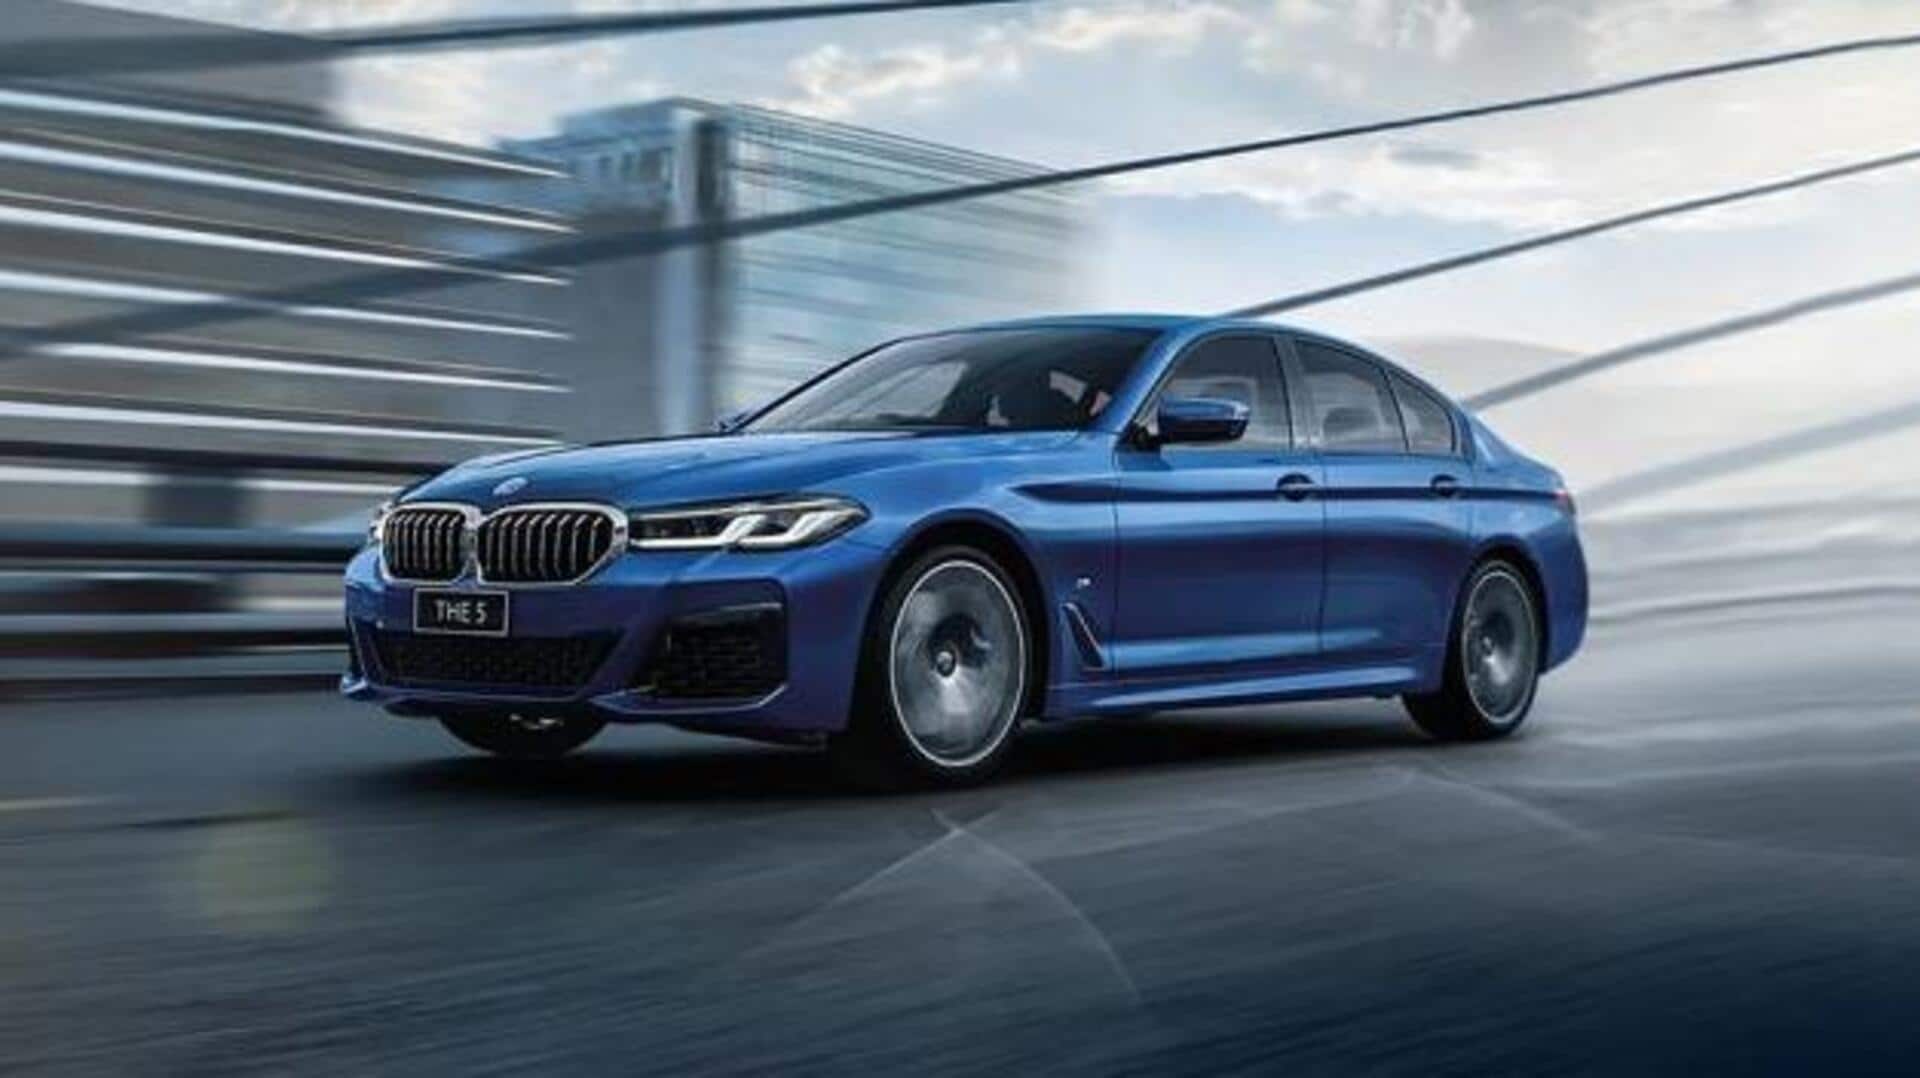 BMW 5-सीरीज के नए इलेक्ट्रिक और ICE मॉडल पर चल रहा काम, मई में होंगे लॉन्च 